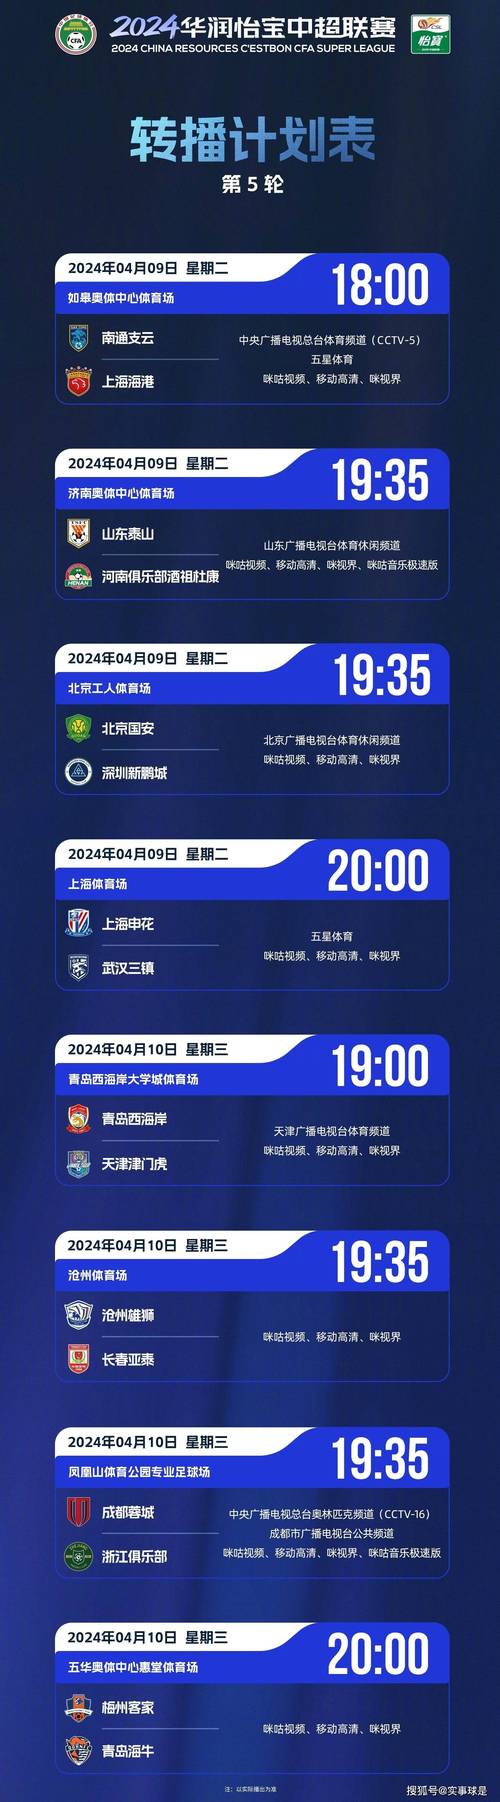 郑州体育电台在线直播节目表的相关图片